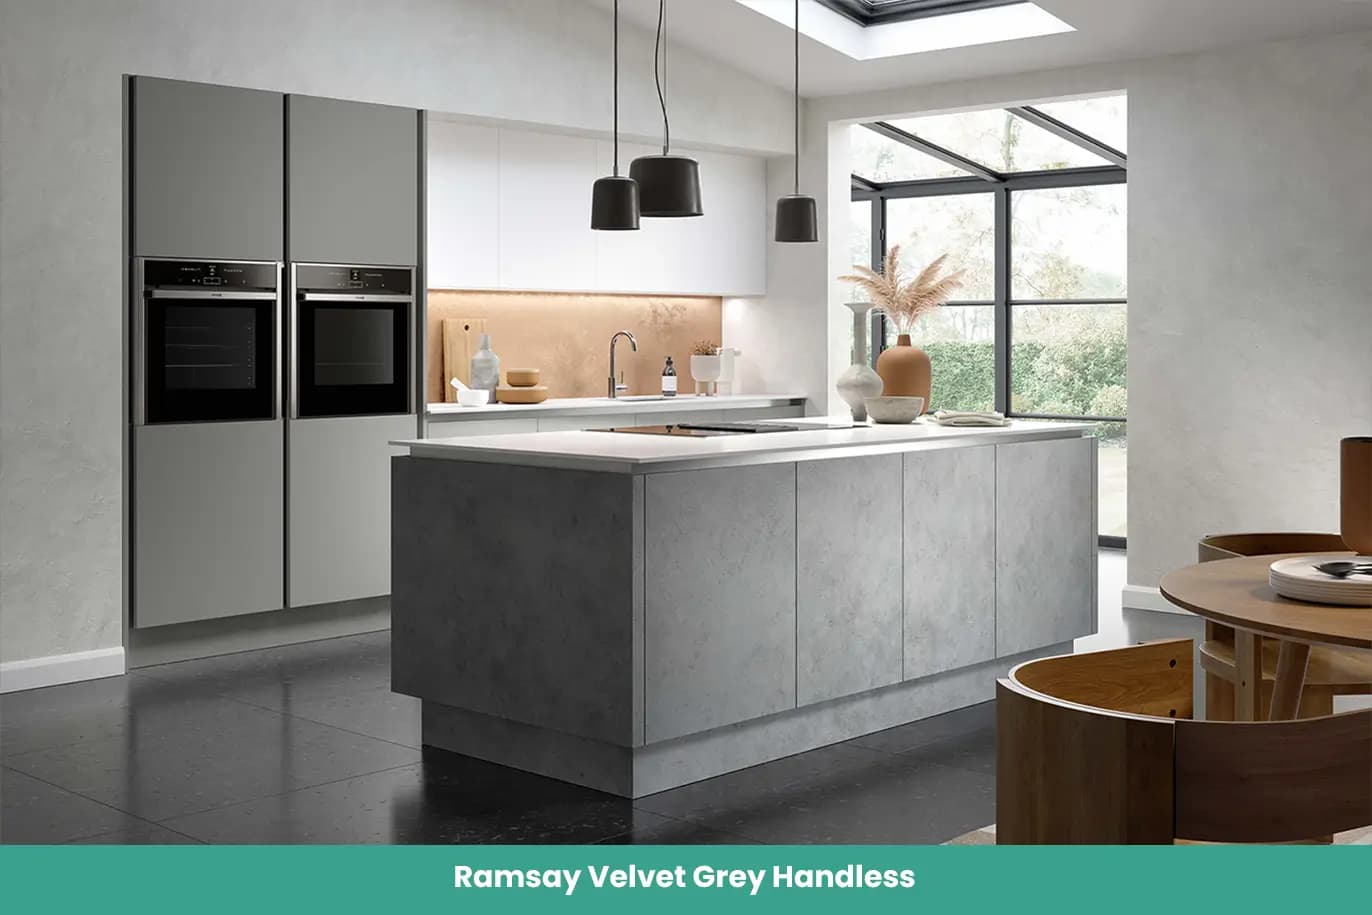 Ramsay Velvet Grey Handless Kitchen